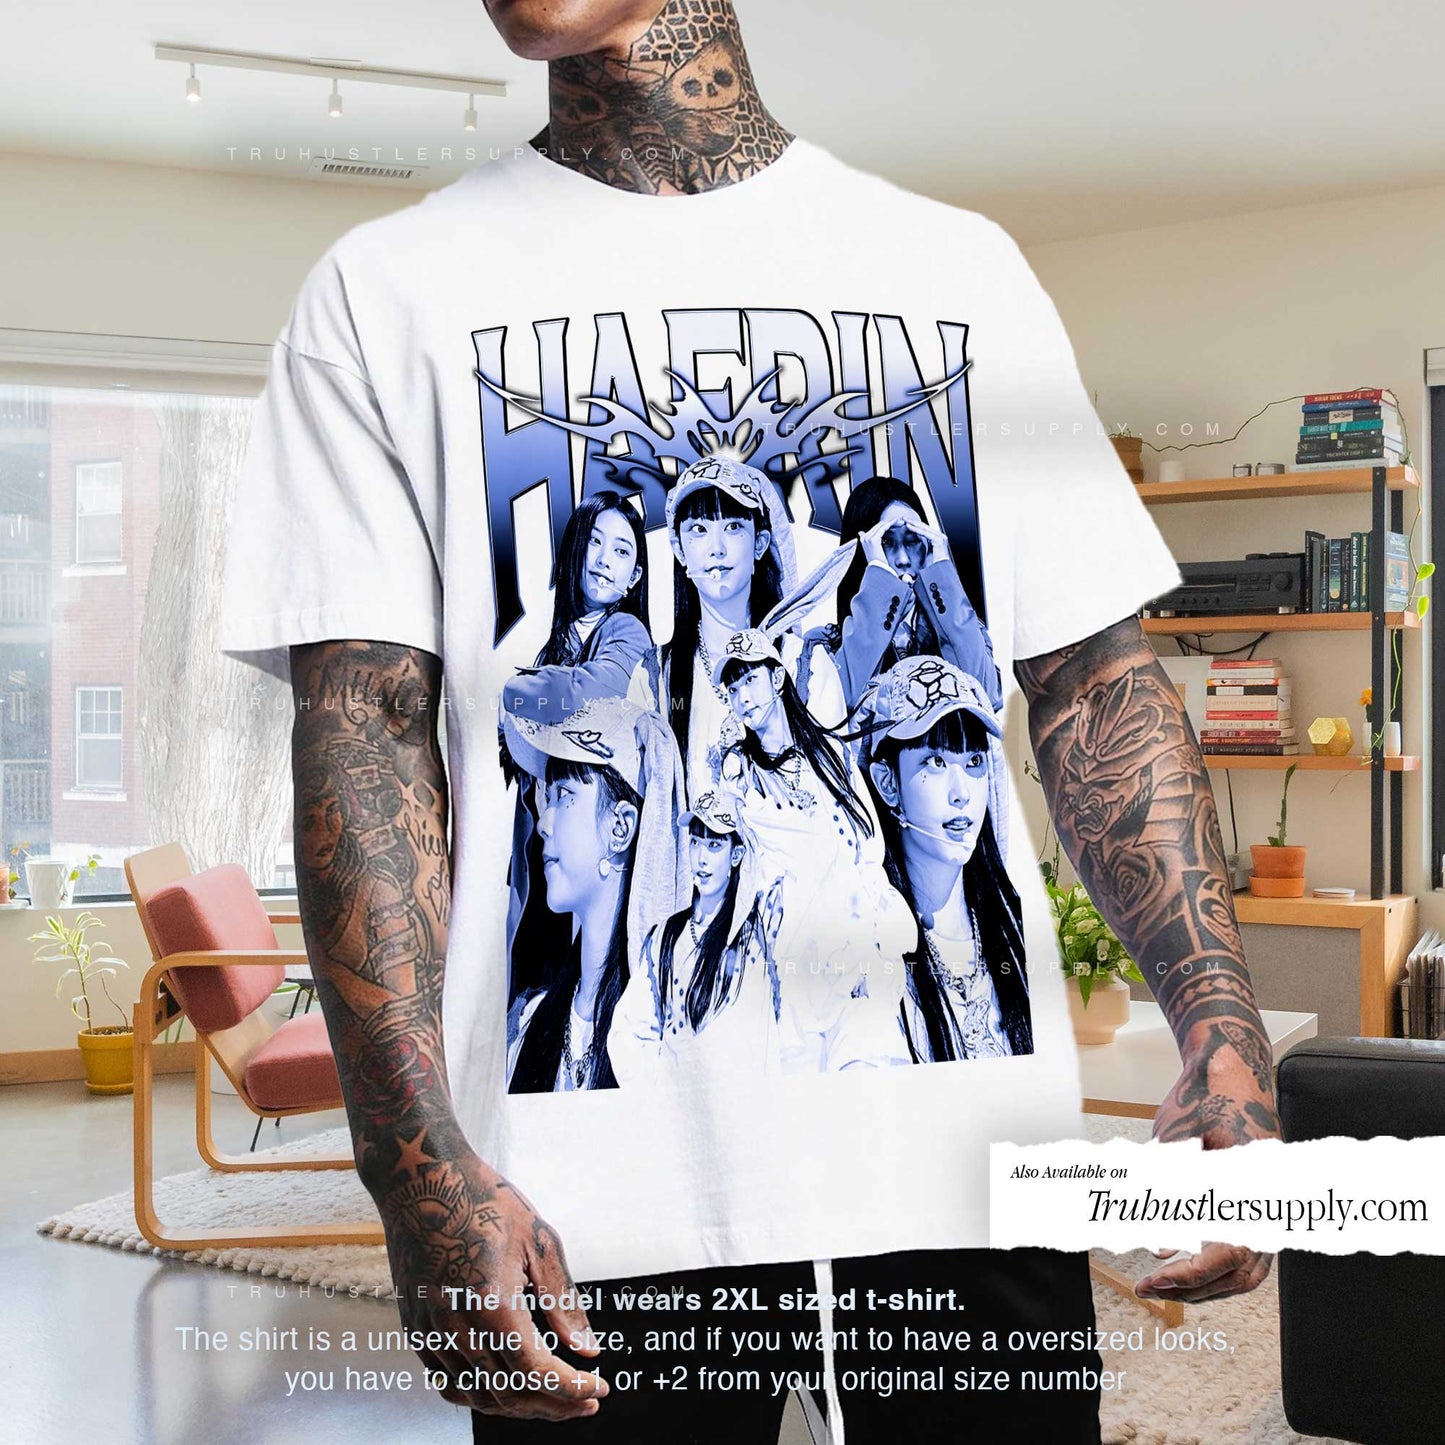 Haerin NewJeans Graphic T Shirt